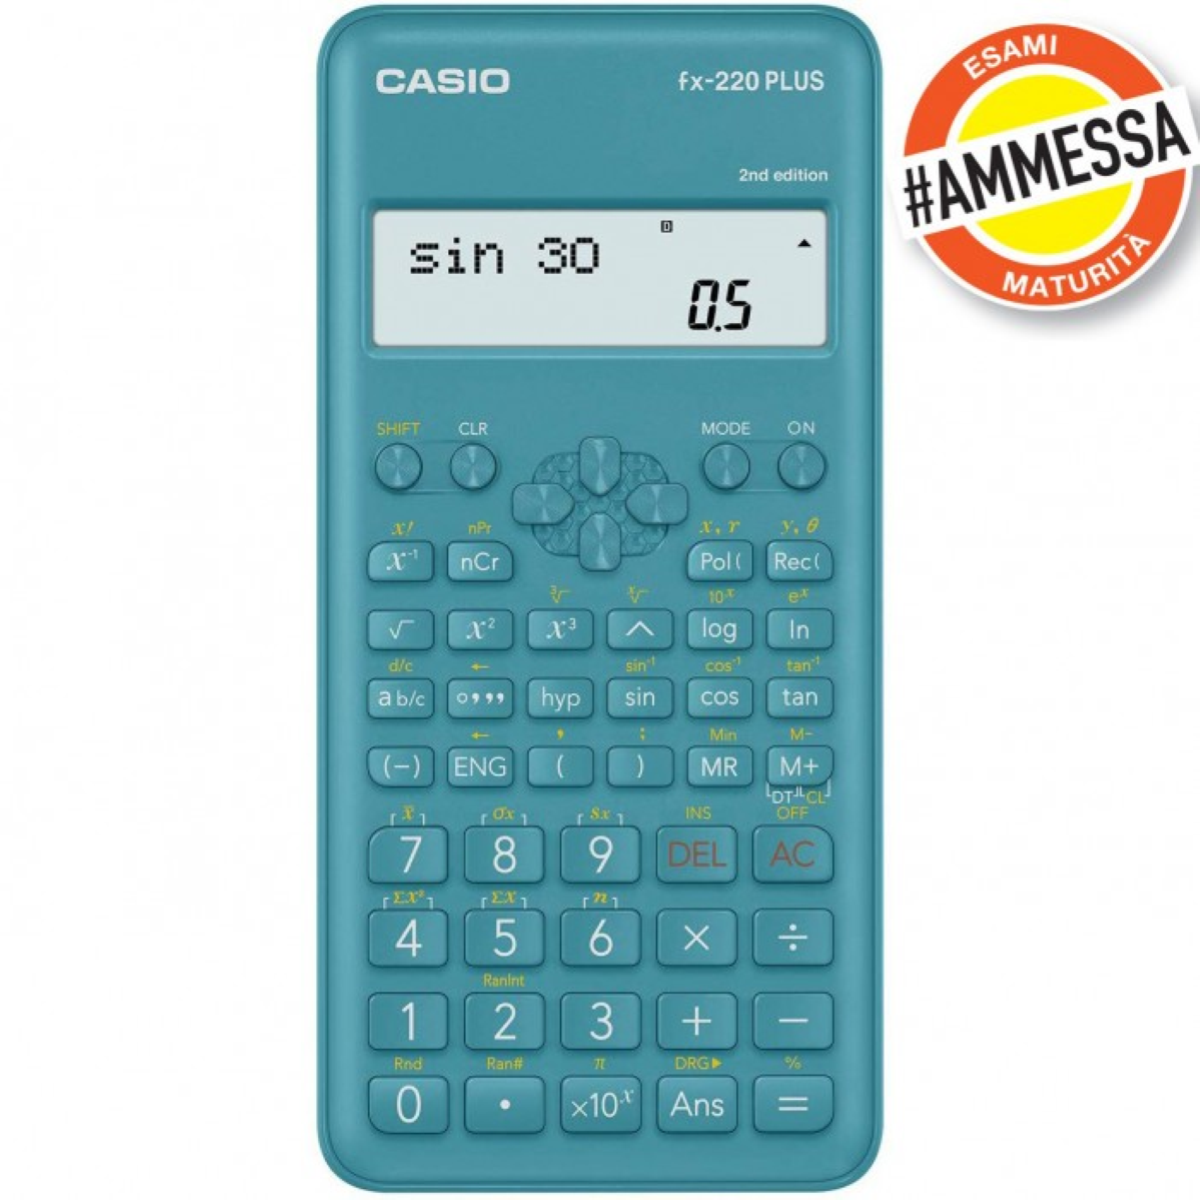 Calcolatrice scientifica Casio FX-991es Plus - Calcolatrici